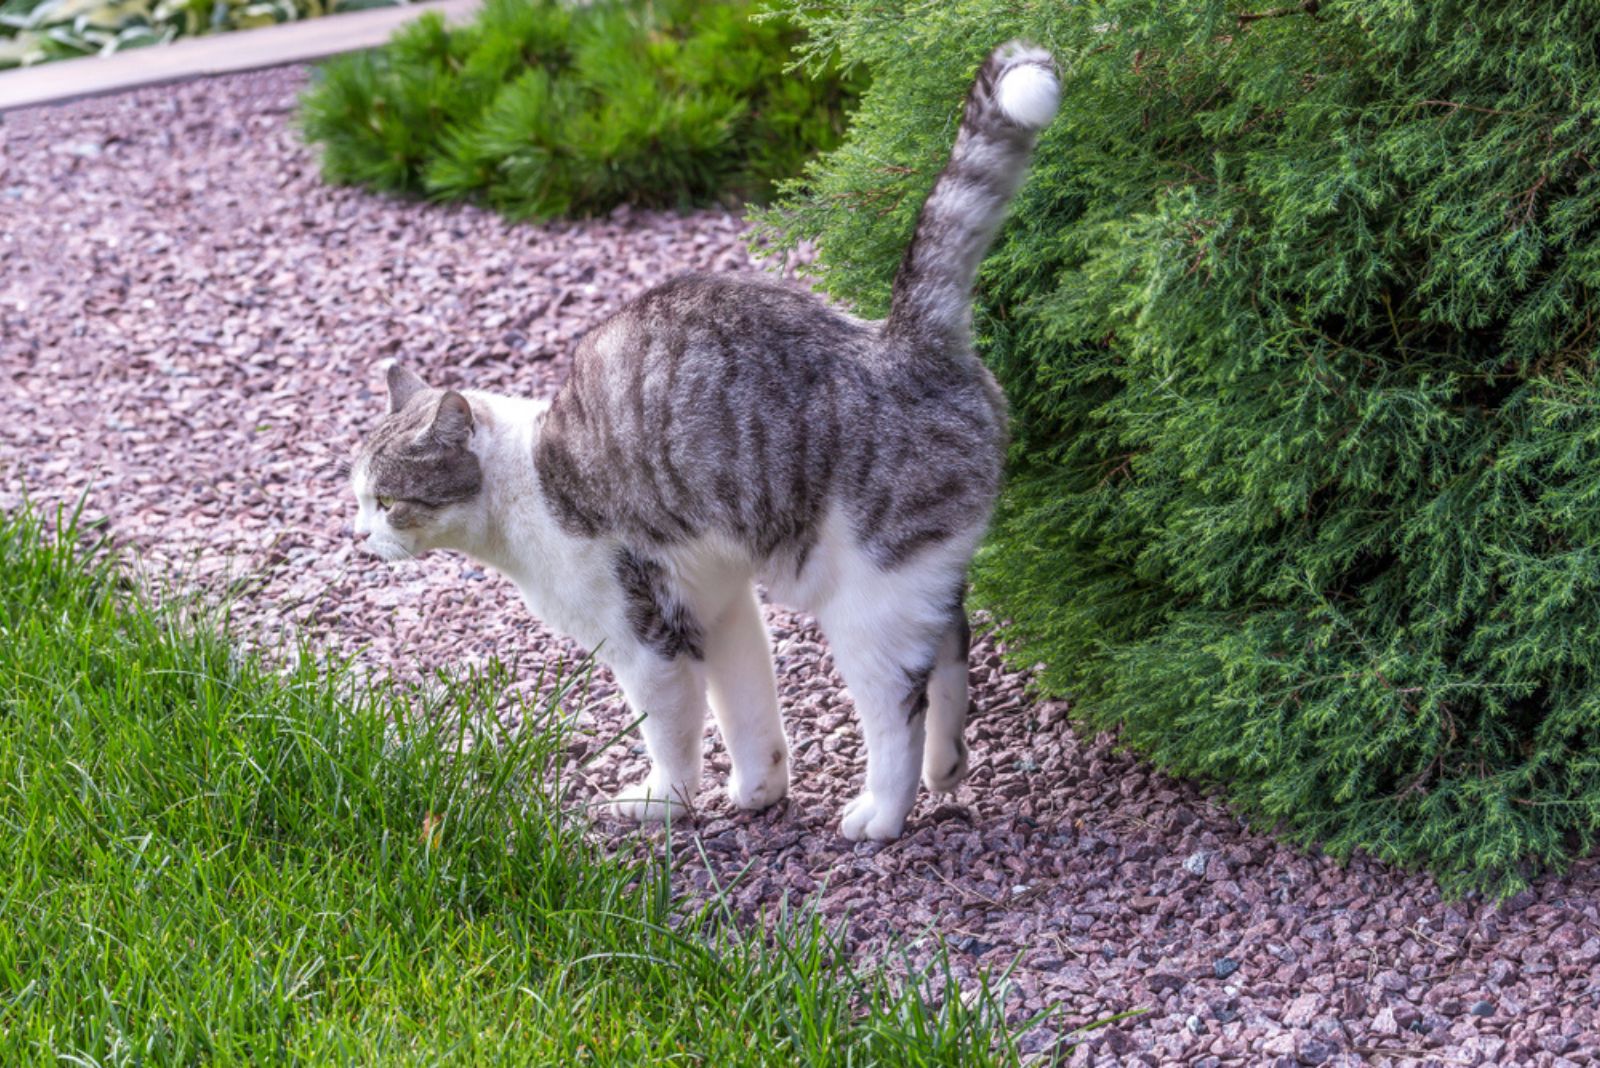 De kat in de tuin staat met zijn staart en lichaam omhoog